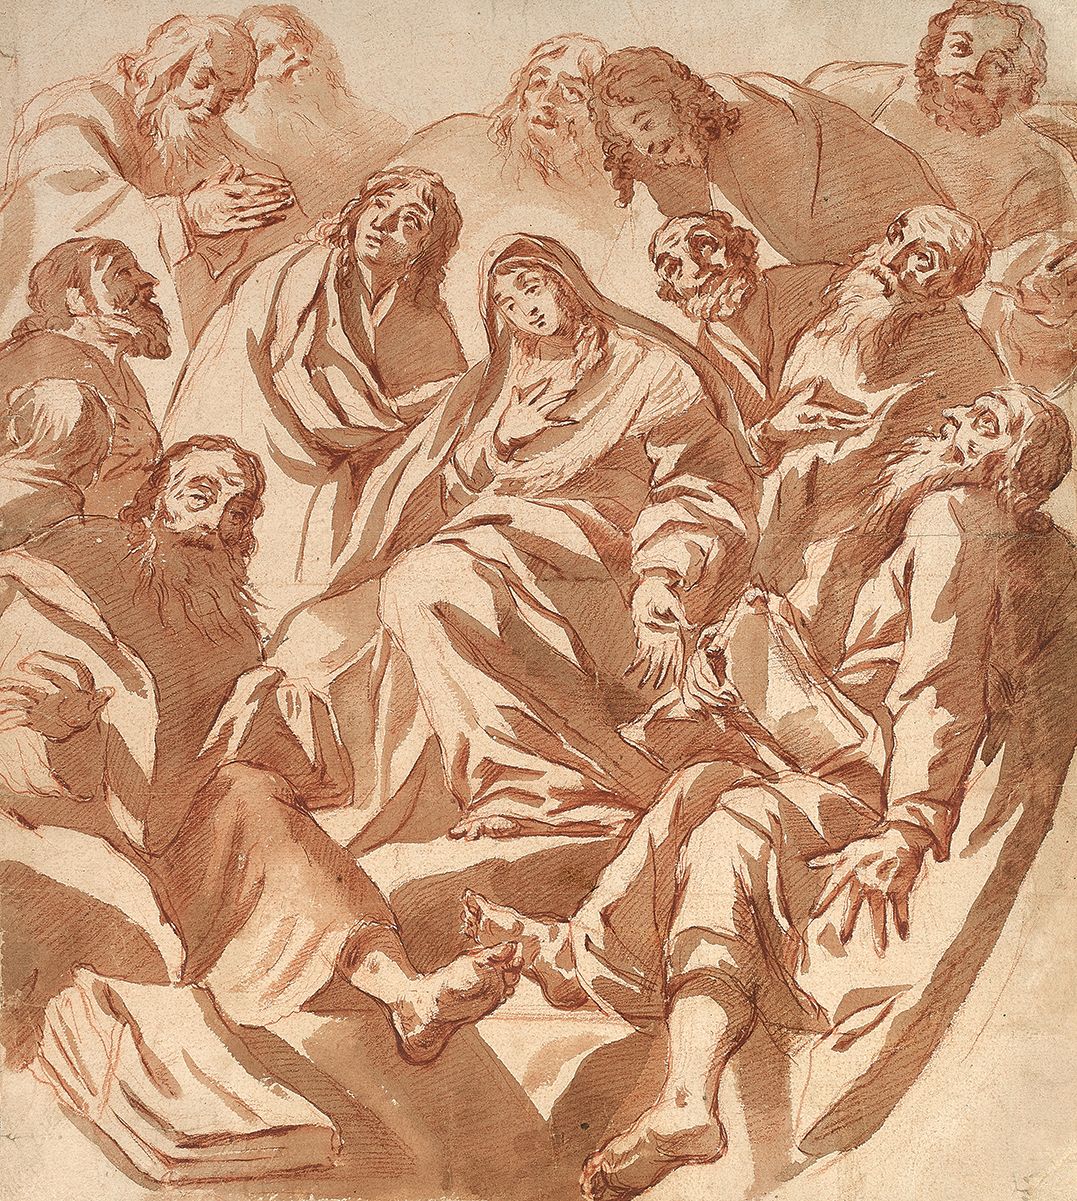 CLAUDE VIGNON (TOURS 1593-PARIS 1670) 被使徒包围的圣母
棕色水洗和红色粉笔。
42 x 36 cm
我们的构图可以与杰罗姆&hellip;